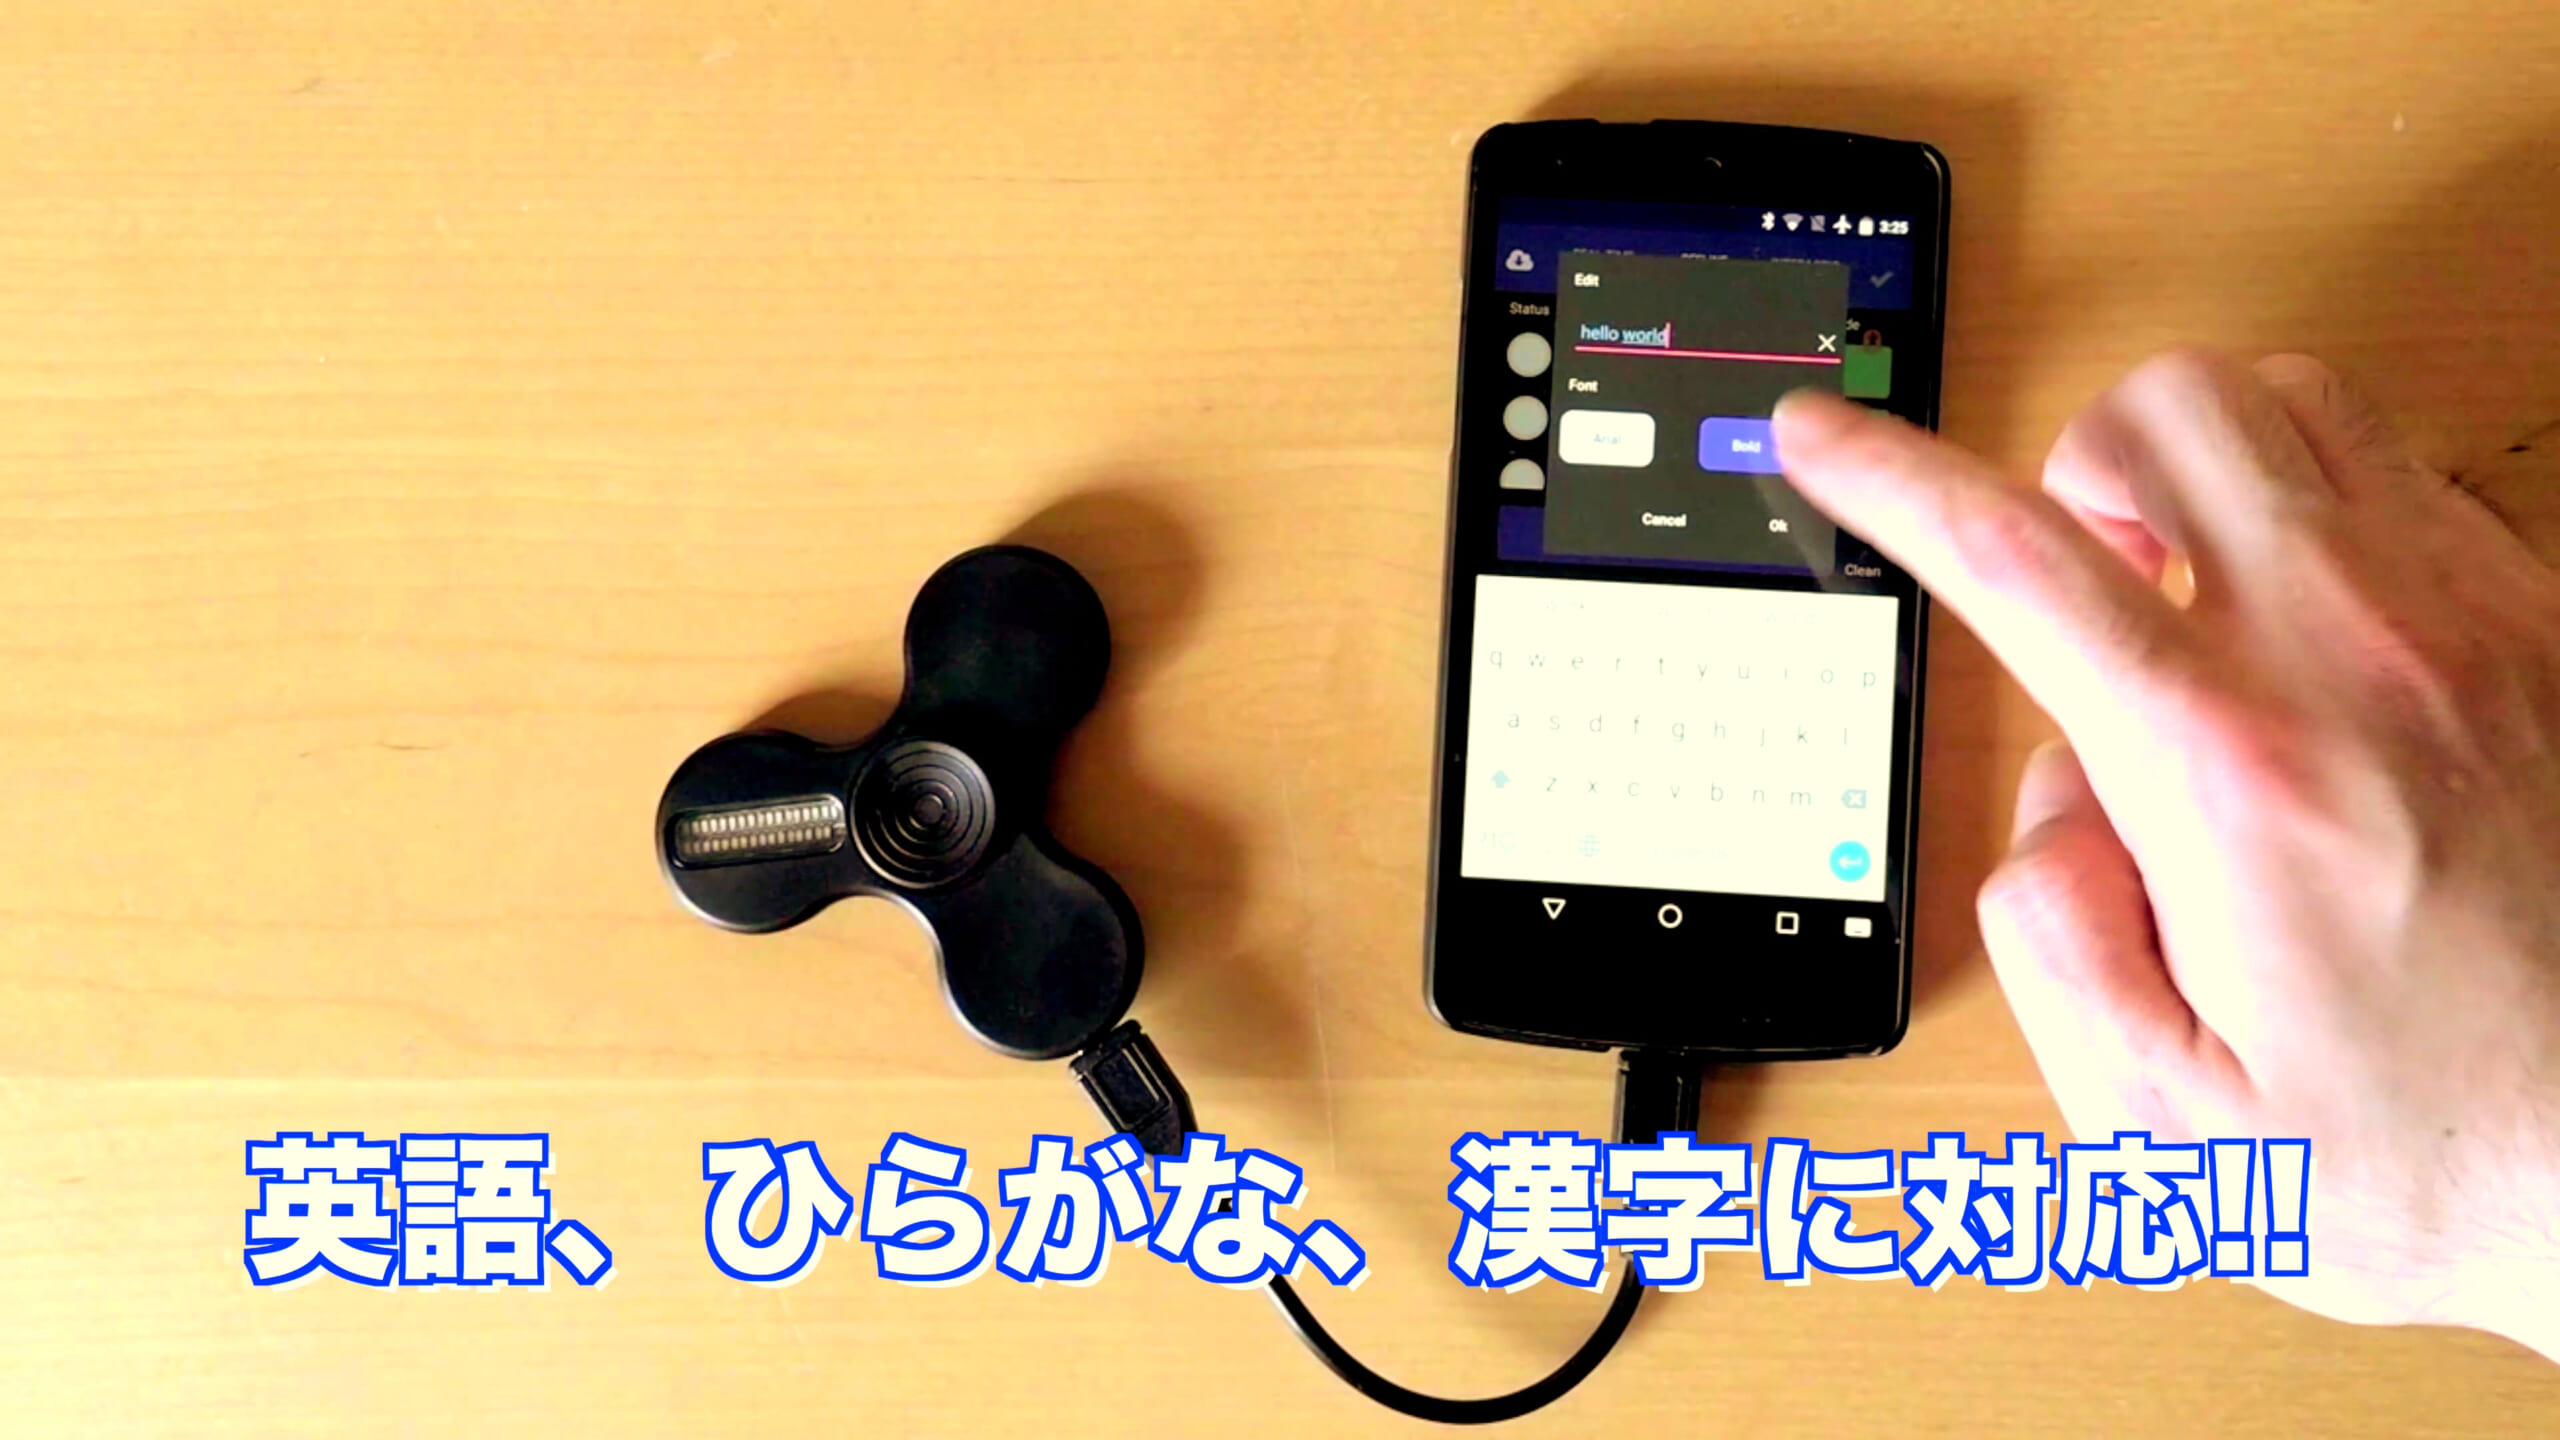 日本語メッセージを表示できるハンドスピナー：MESSAGE SPINNER | block.fm